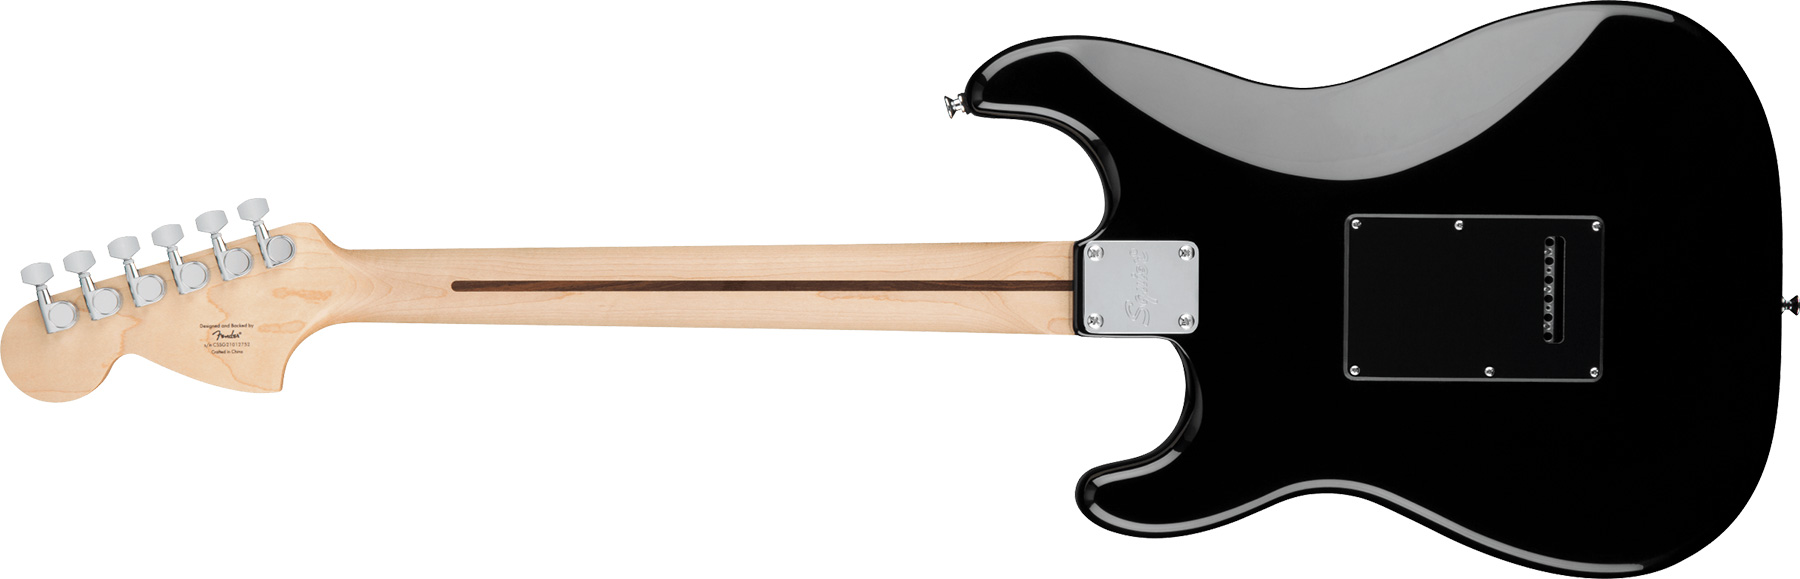 Squier Strat Affinity Black Pickguard Fsr Ltd Hss Trem Lau - Black - E-Gitarre in Str-Form - Variation 1